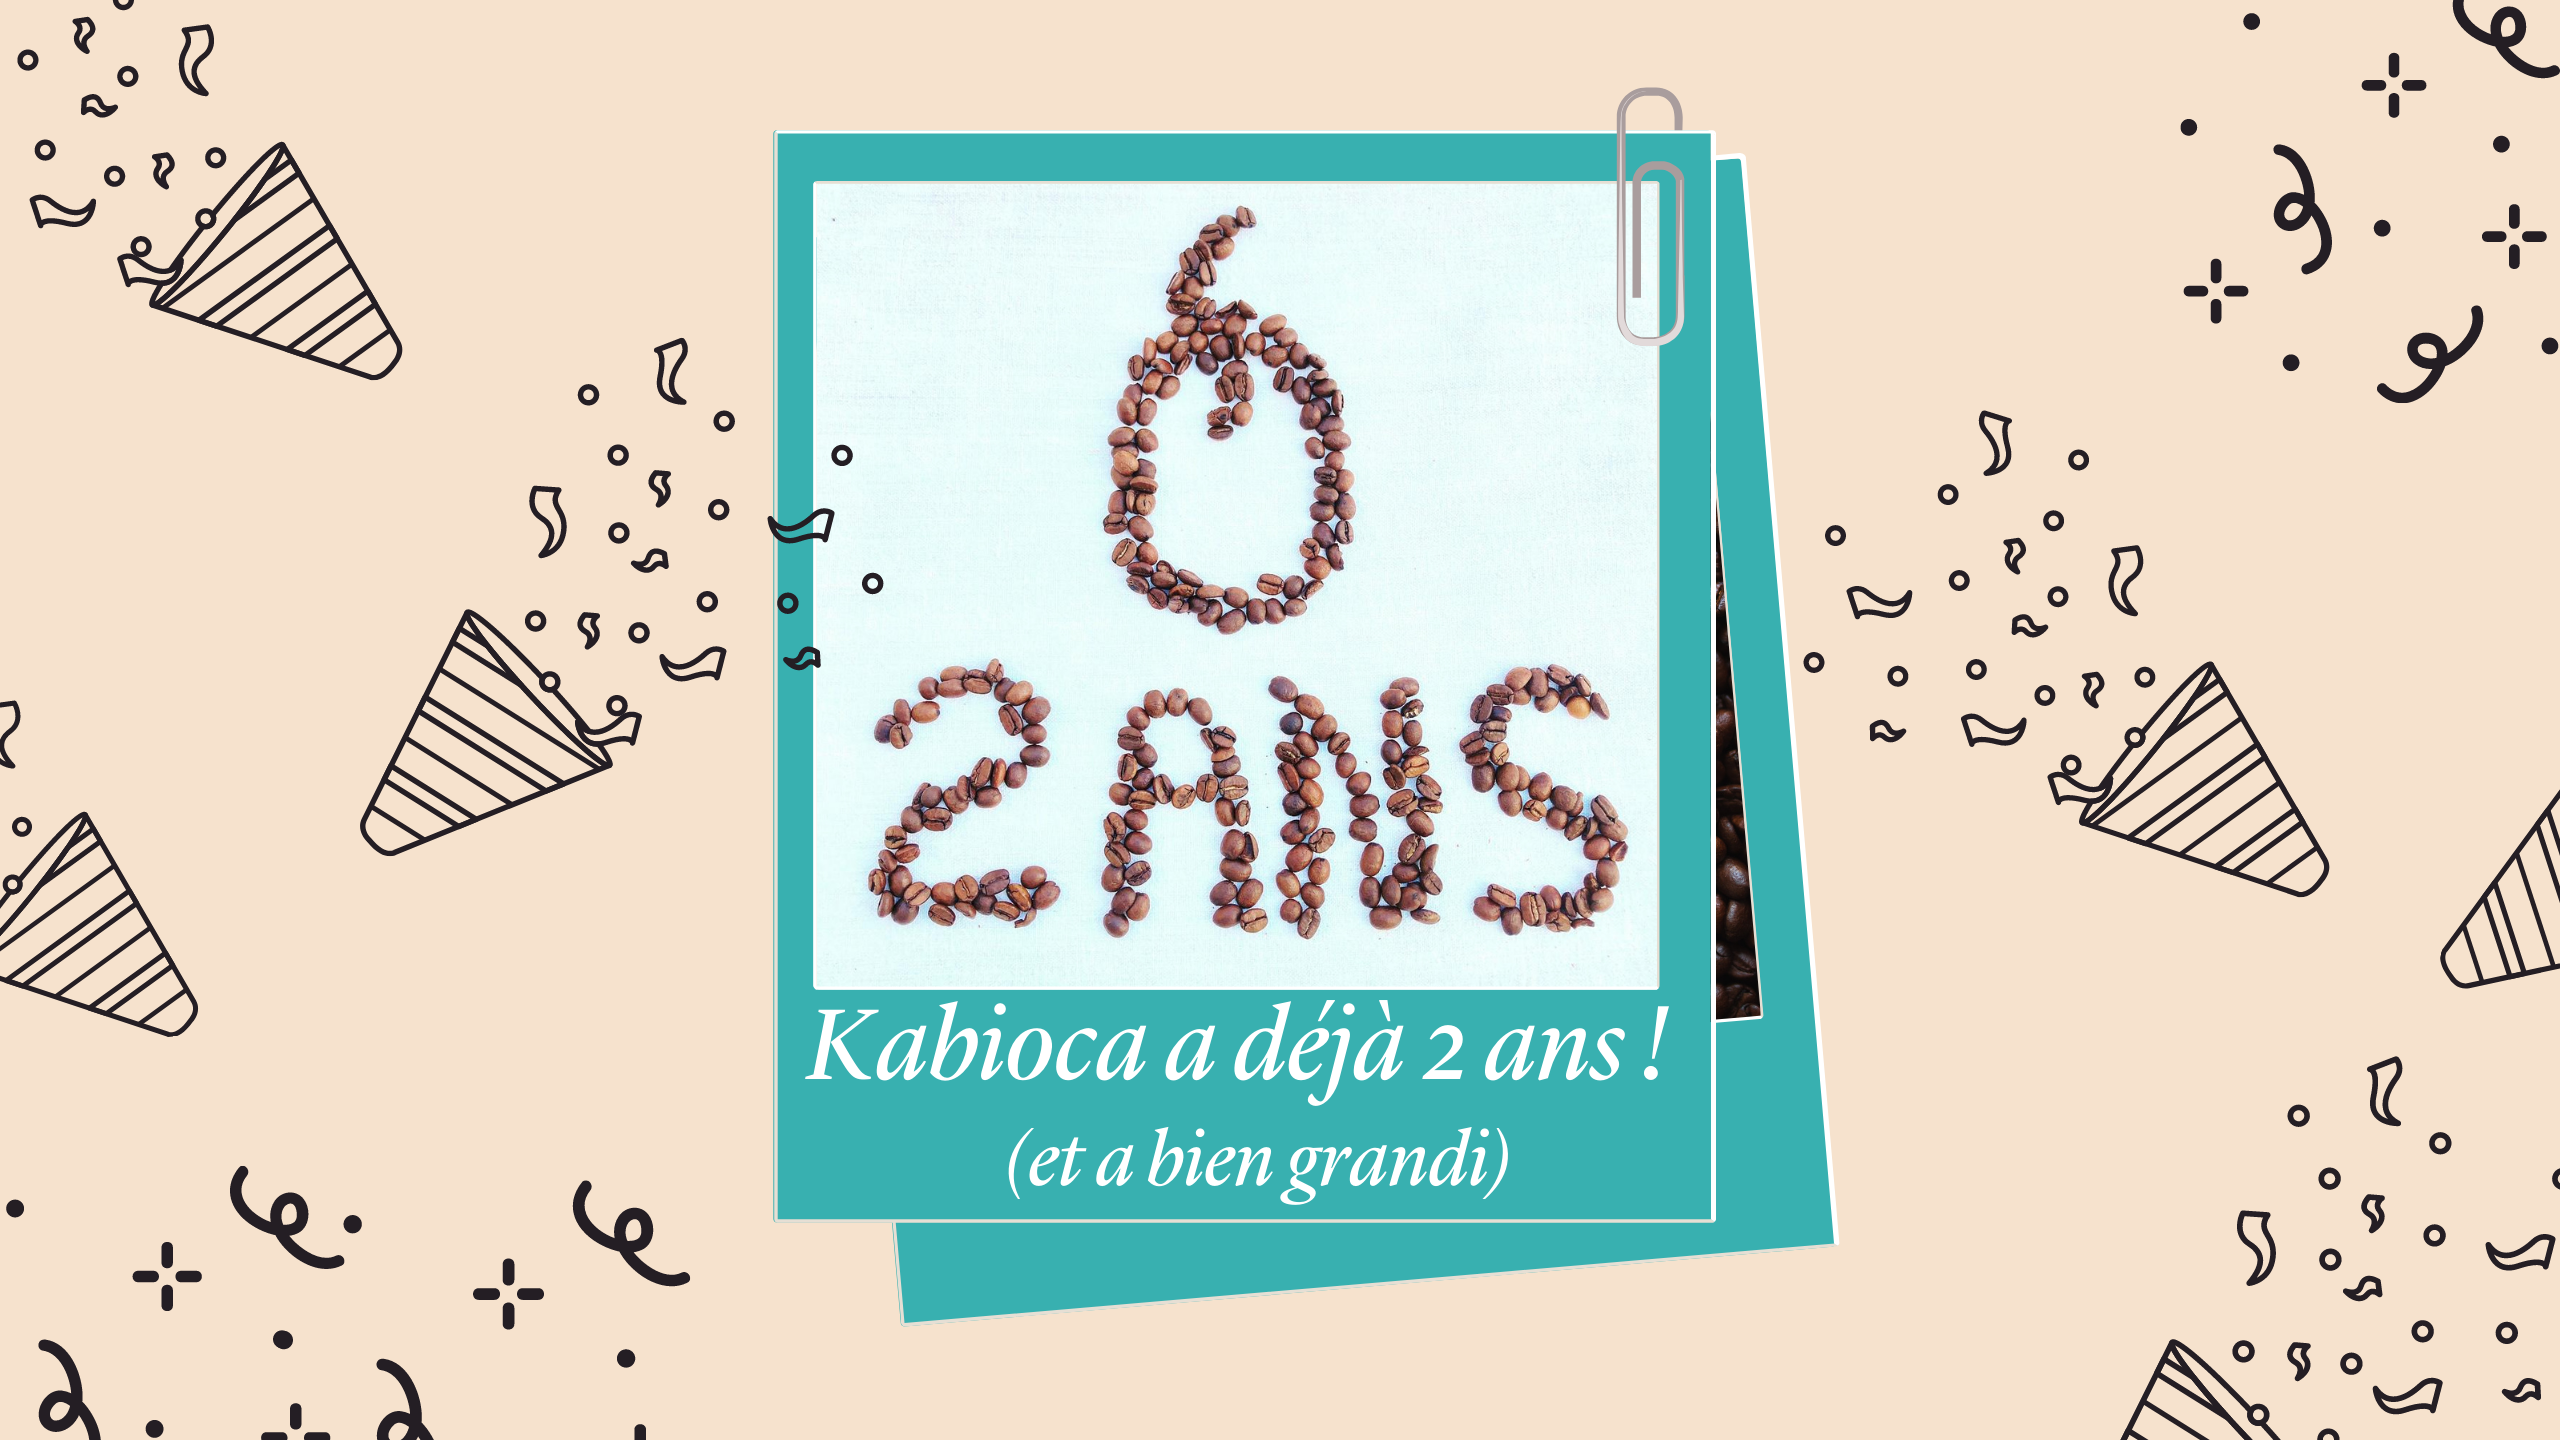 La capsule de café Kabioca a déjà 2 ans